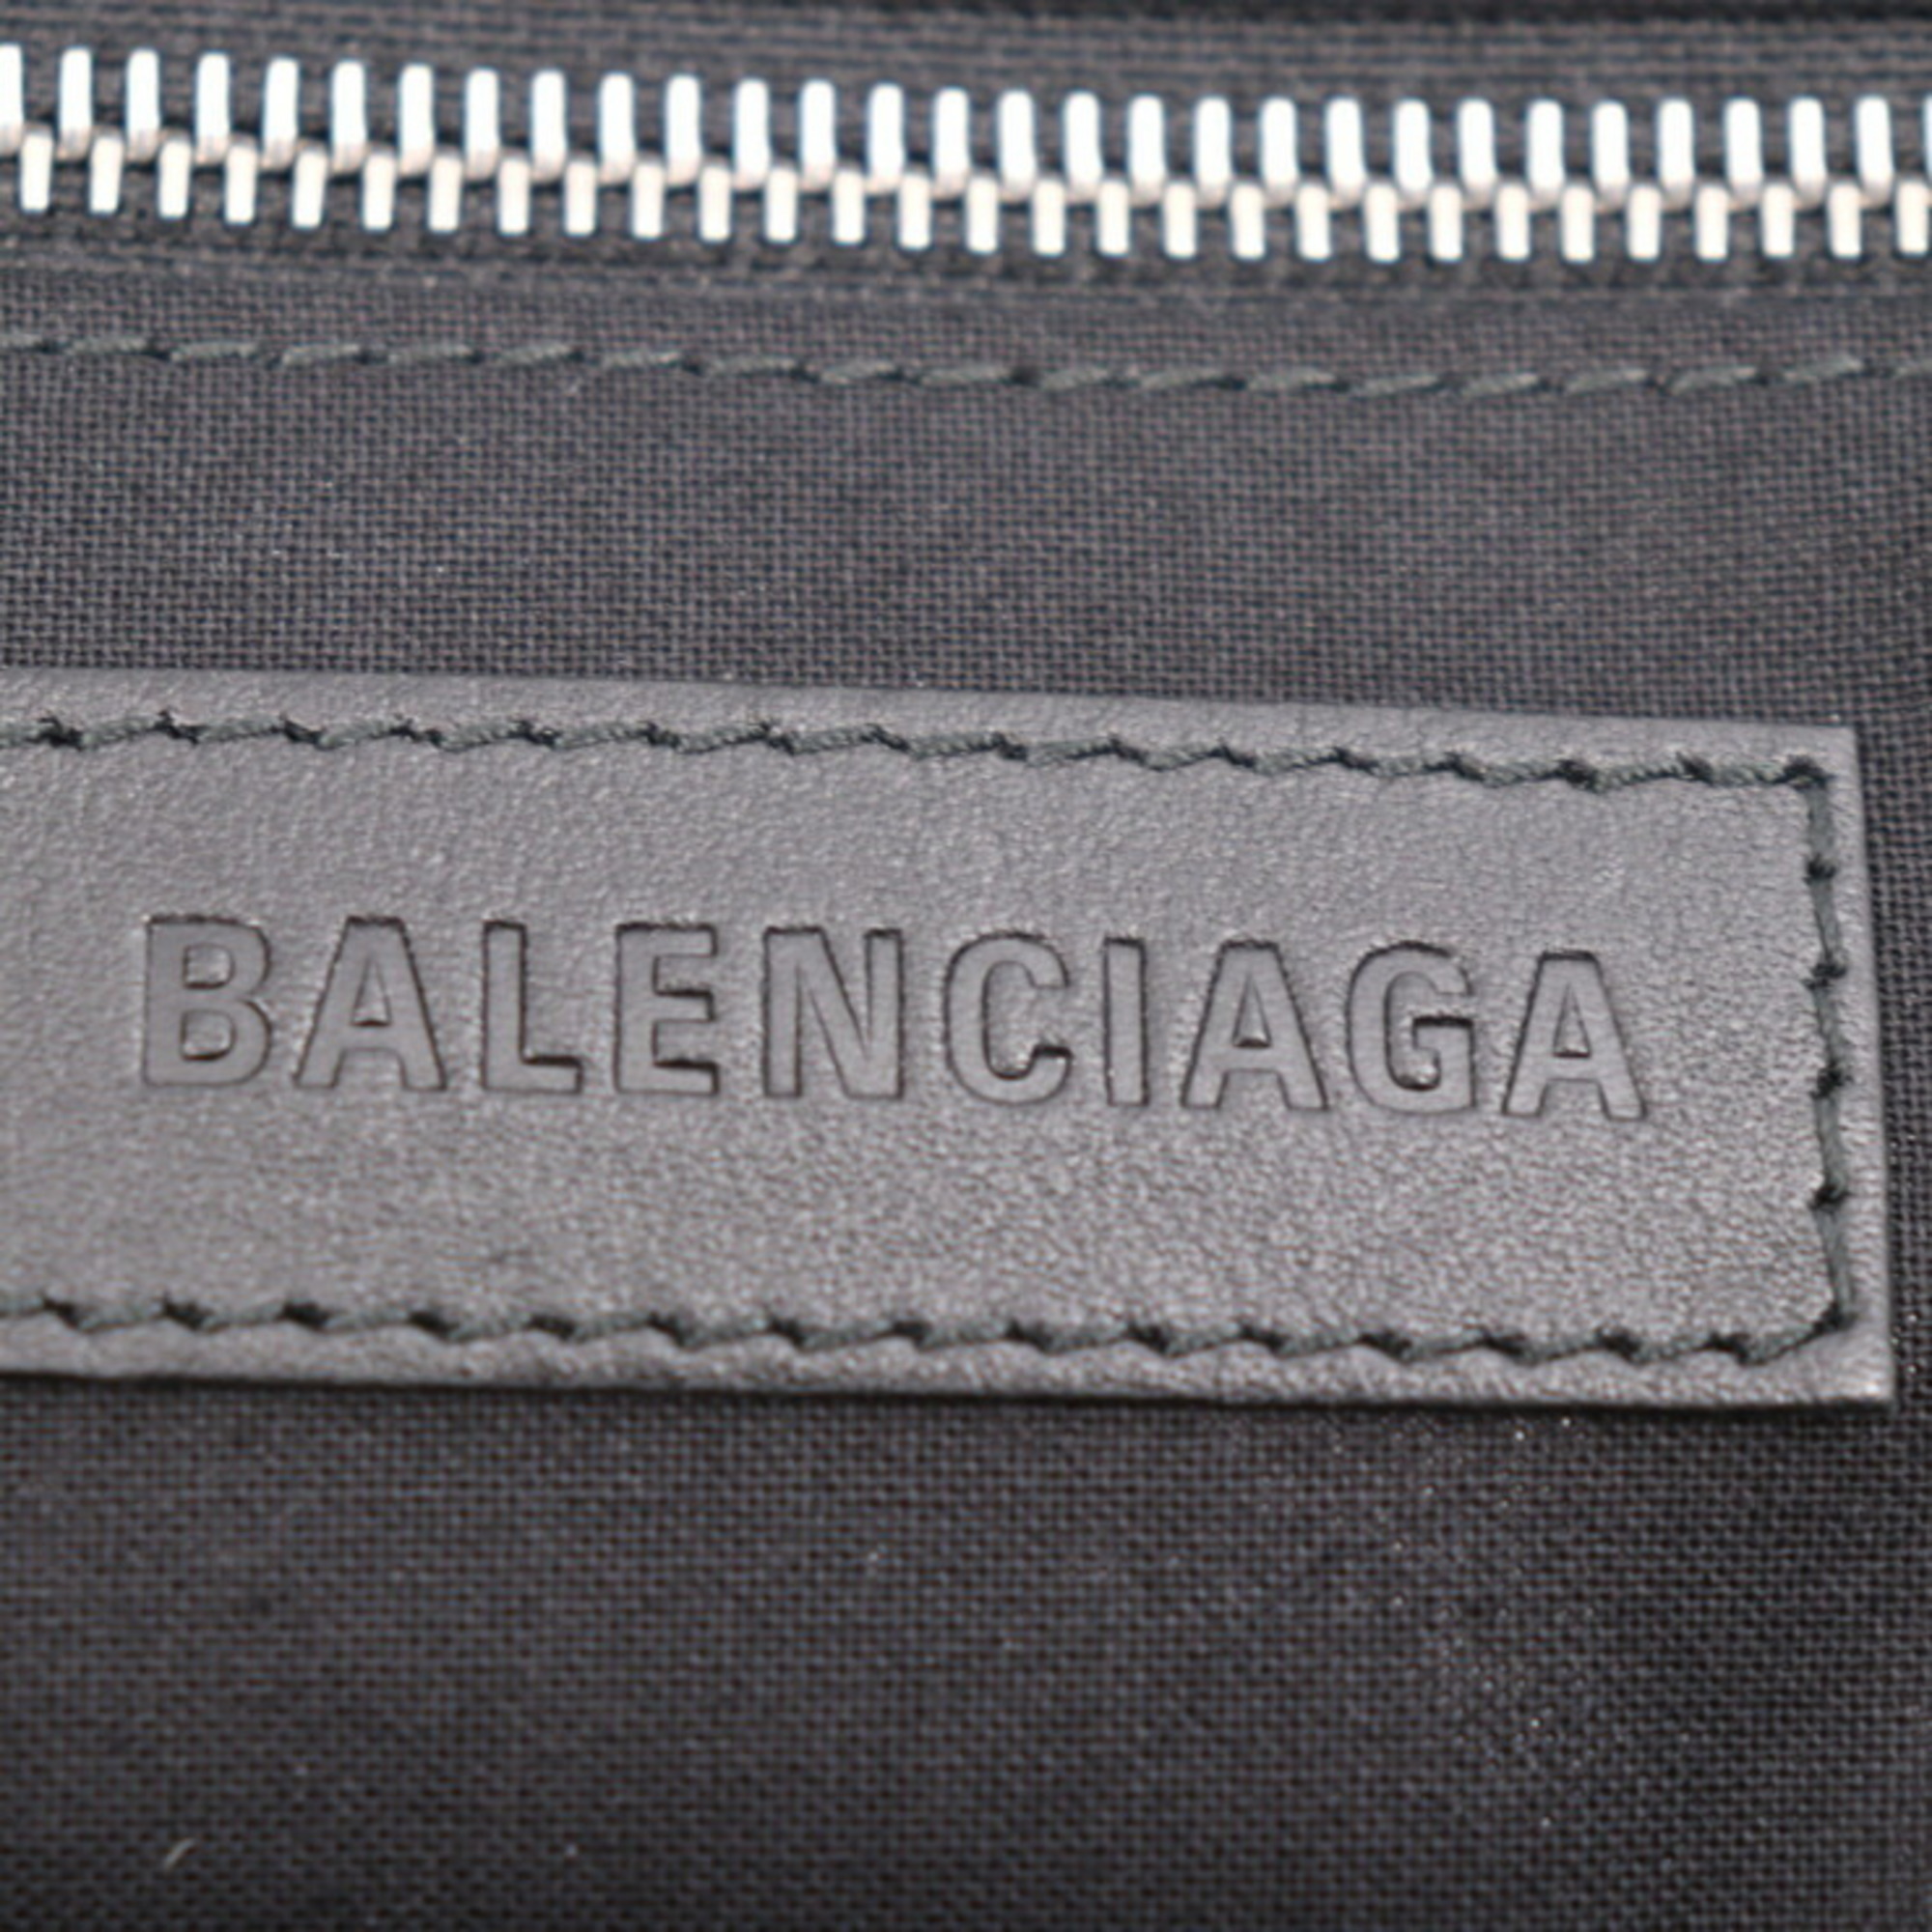 BALENCIAGA JUMBO Tote Bag 692068 Canvas Leather Natural Black Shoulder